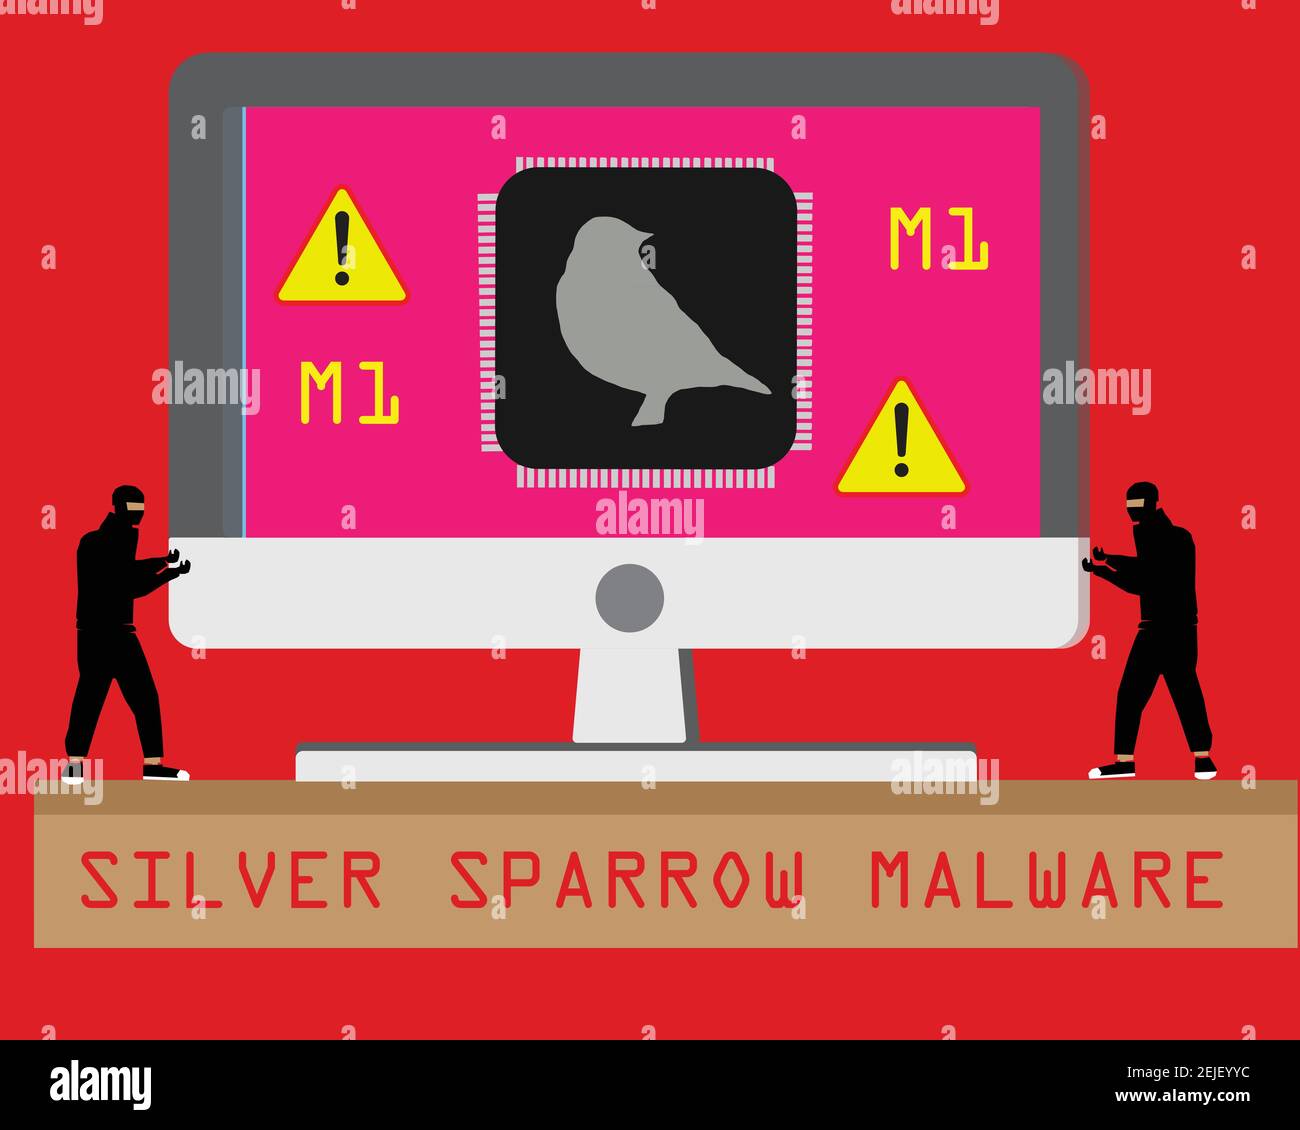 Die Malware mit dem Namen „Silver Sparrow“ verfügt über einen Mechanismus zur Selbstzerstörung, eine Funktion, die normalerweise für Operationen mit hoher Tarnung reserviert ist. Stock Vektor